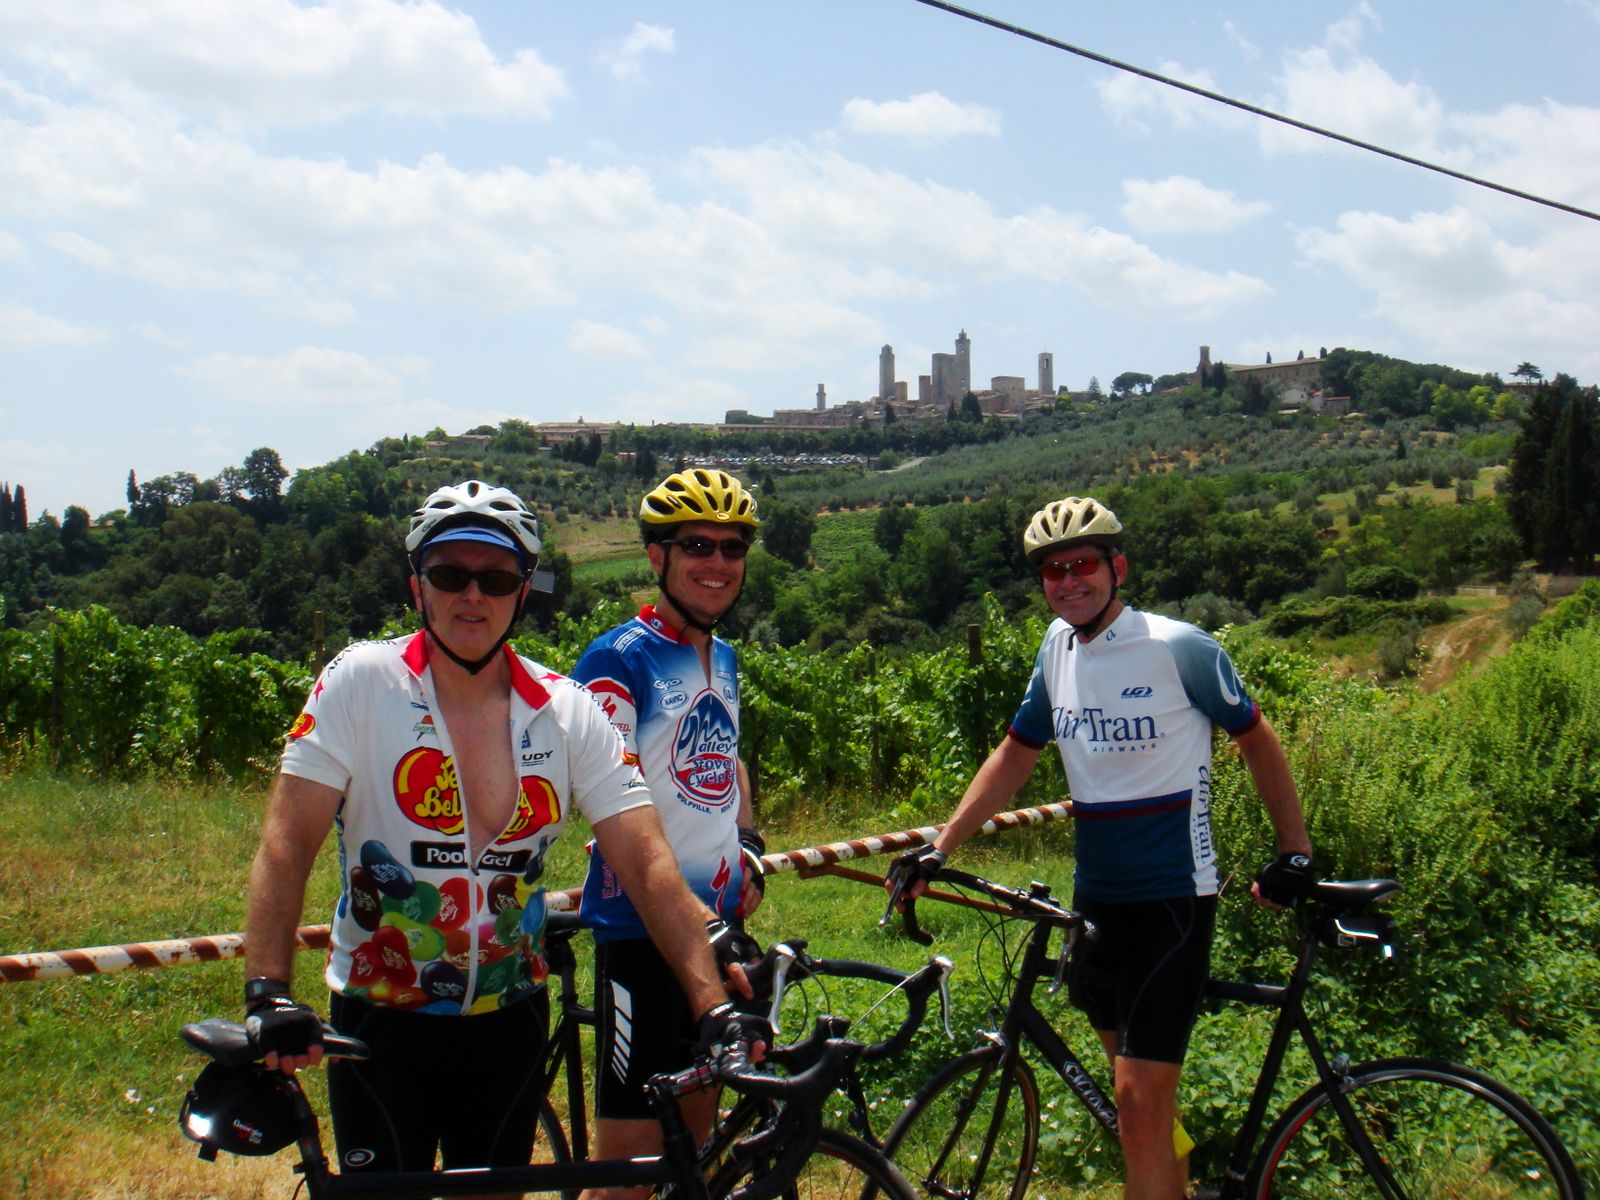 Cyclomundo bikers at a Tuscan vineyard